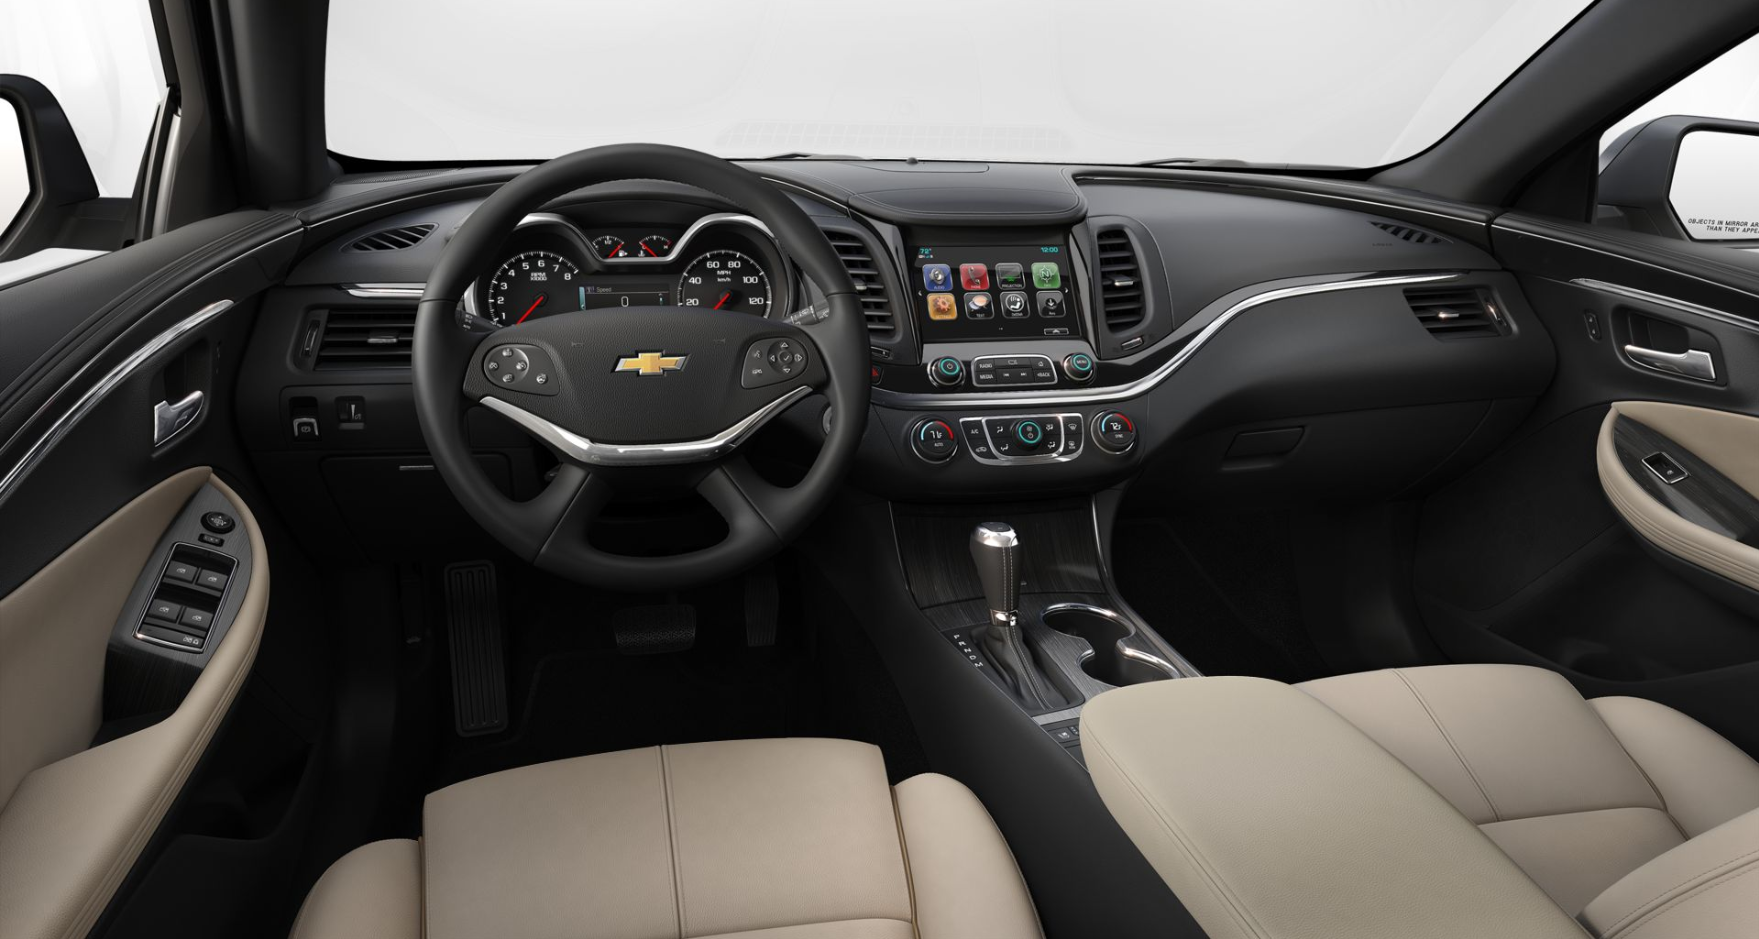 Giá xe Chevrolet Impala 2023  Đánh giá Thông số kỹ thuật Hình ảnh Tin  tức  Autofun